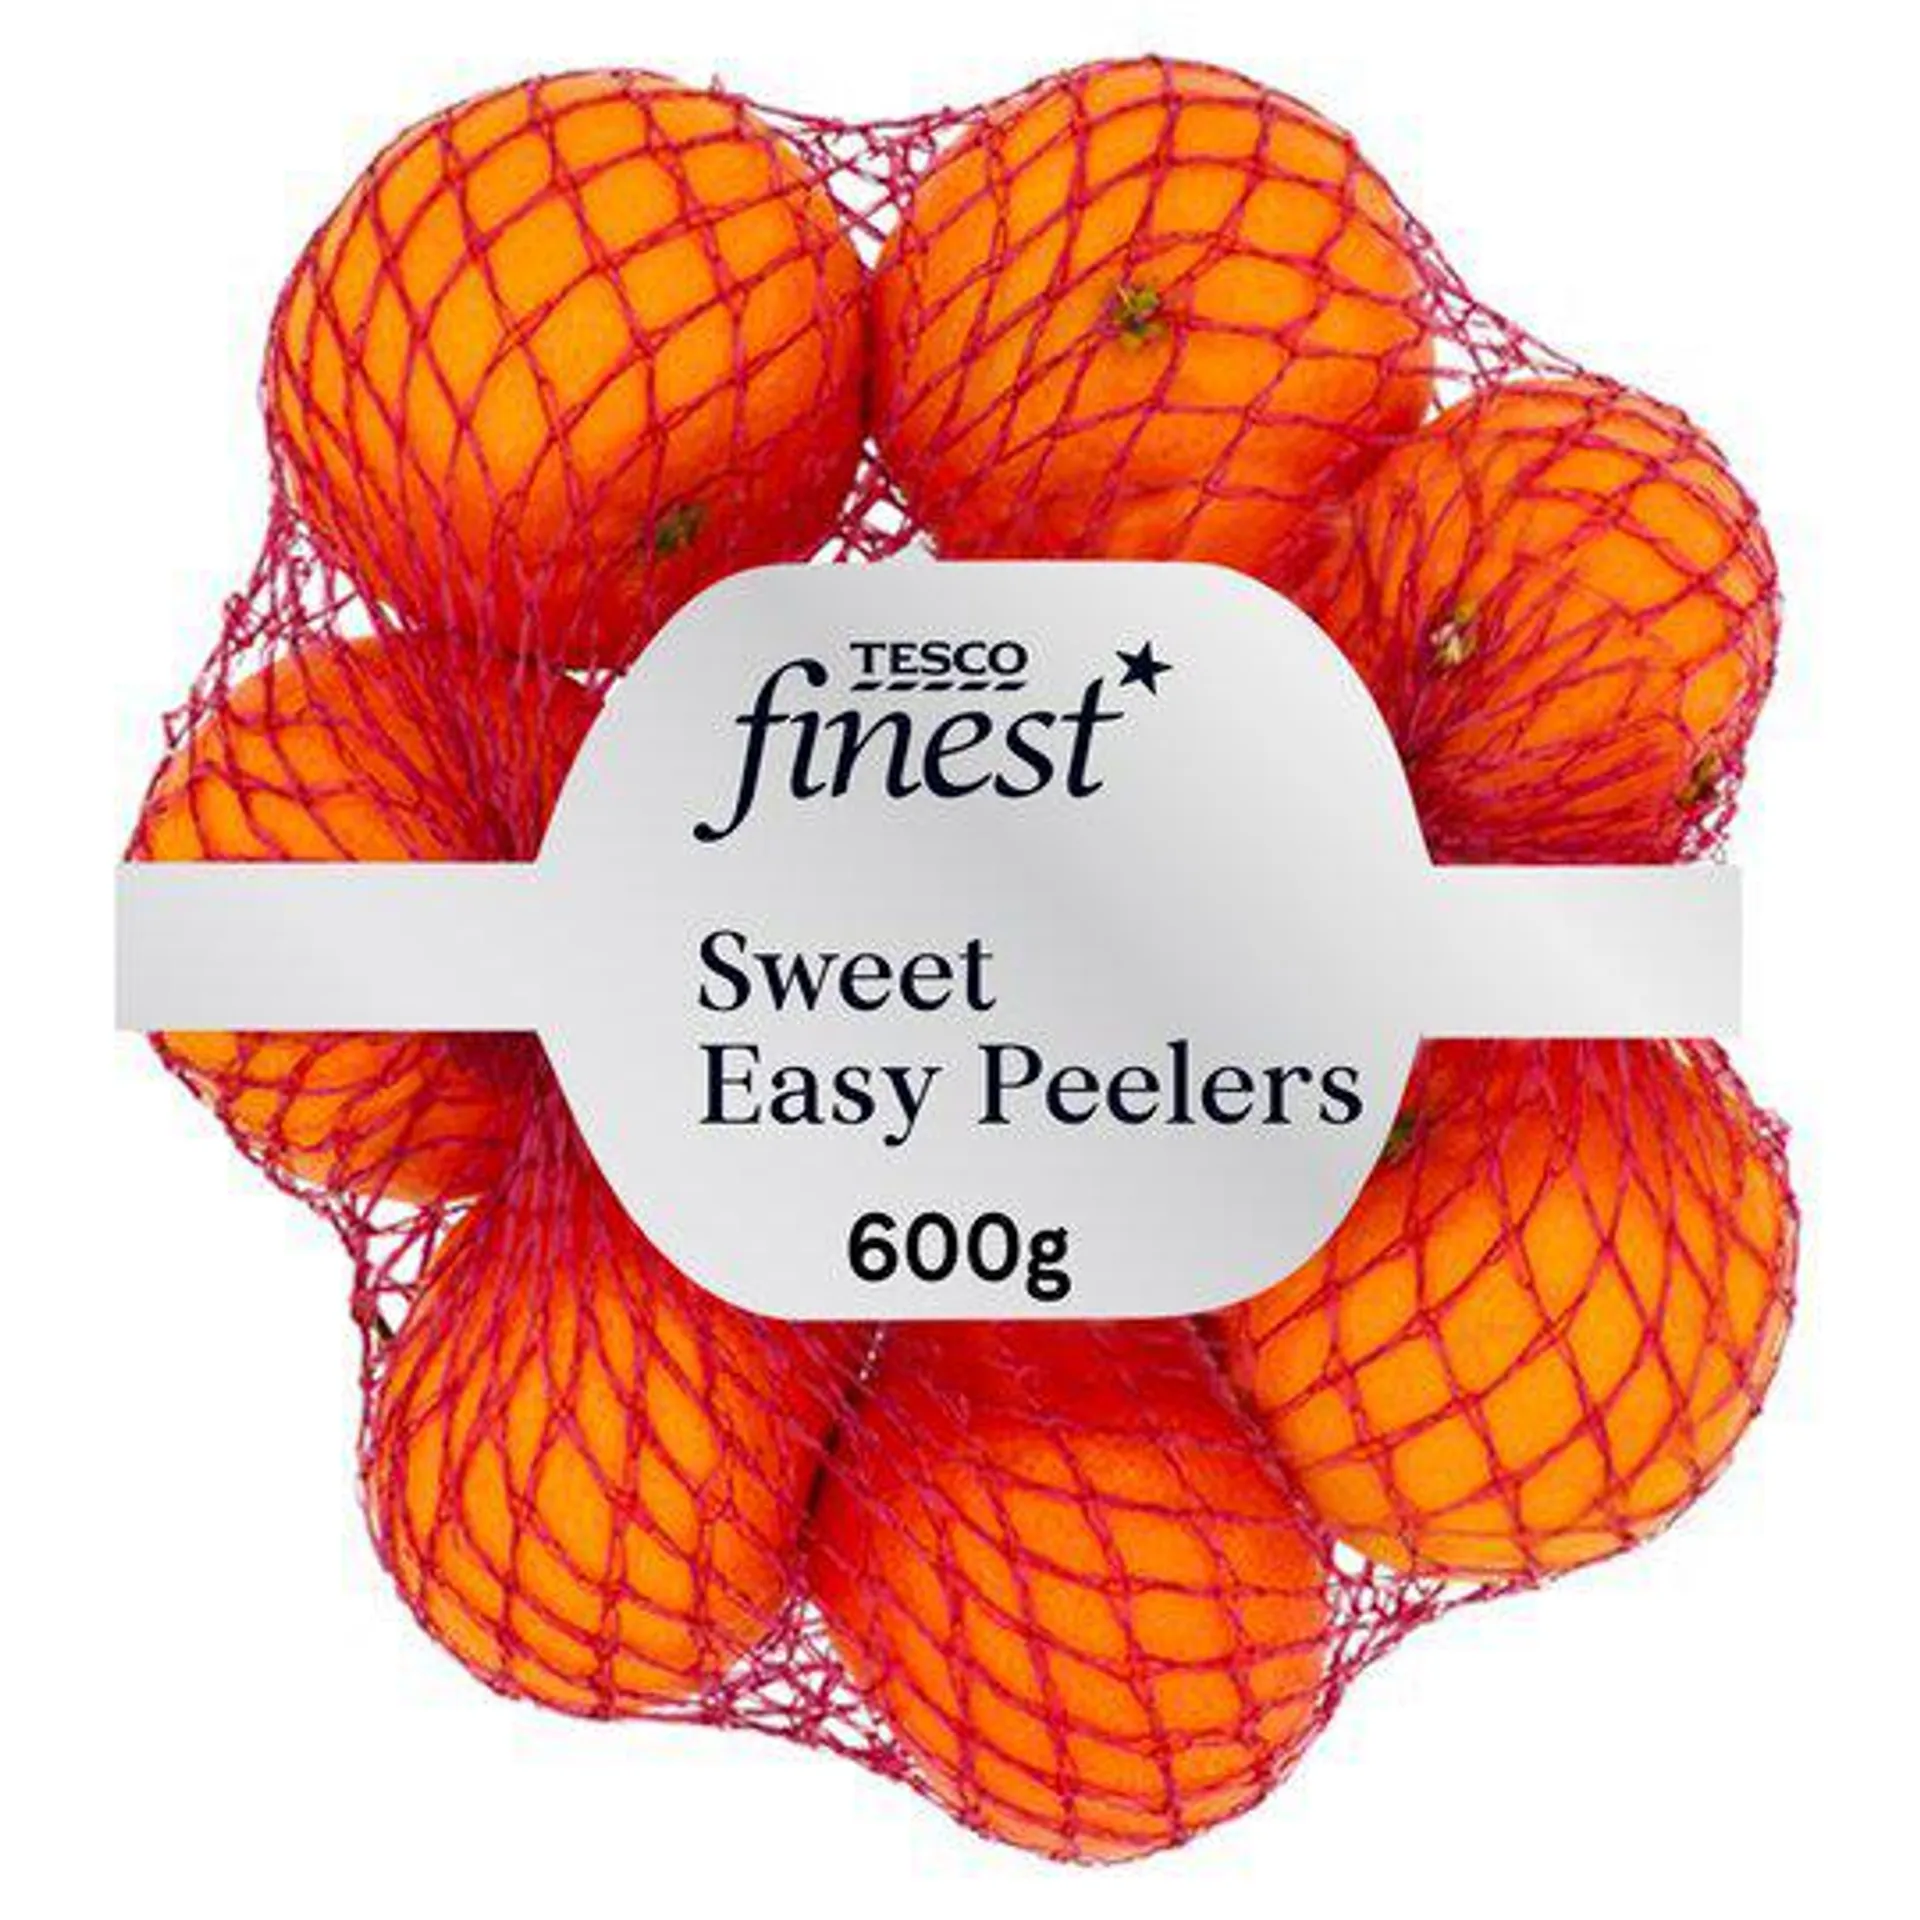 Tesco Finest Clementine Or Sweet Easy Peeler 600G